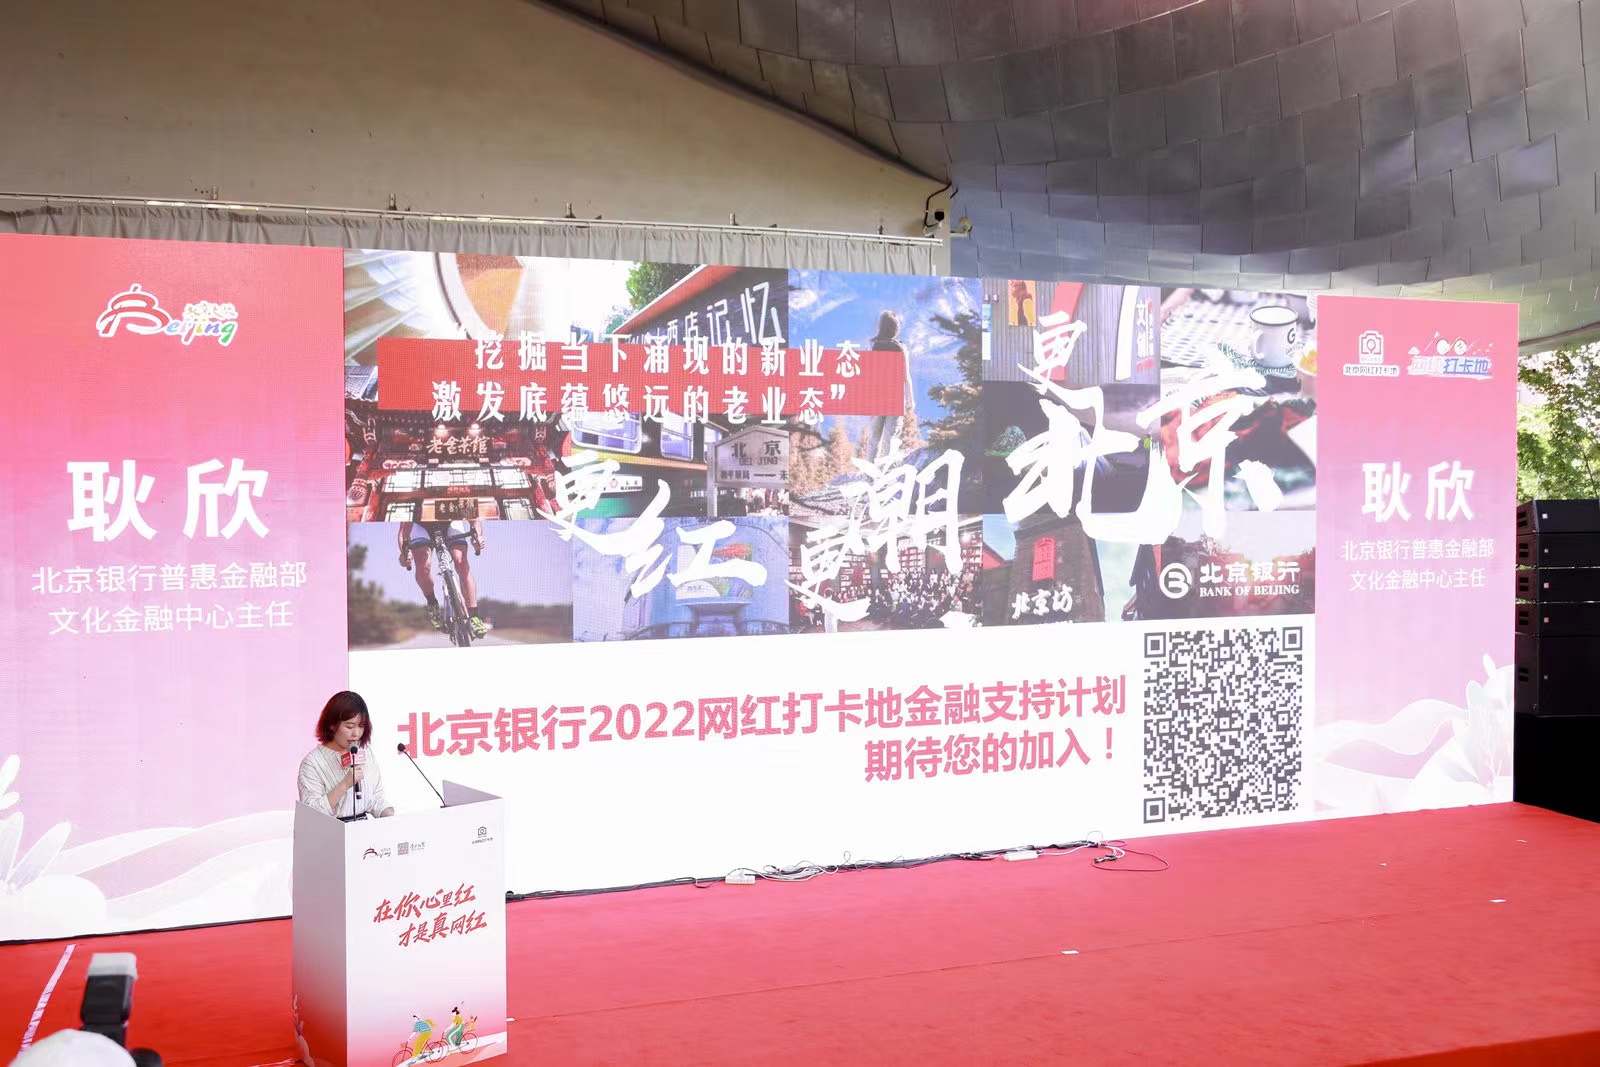 2022 베이징 핫플레이스 선정 이벤트 시작